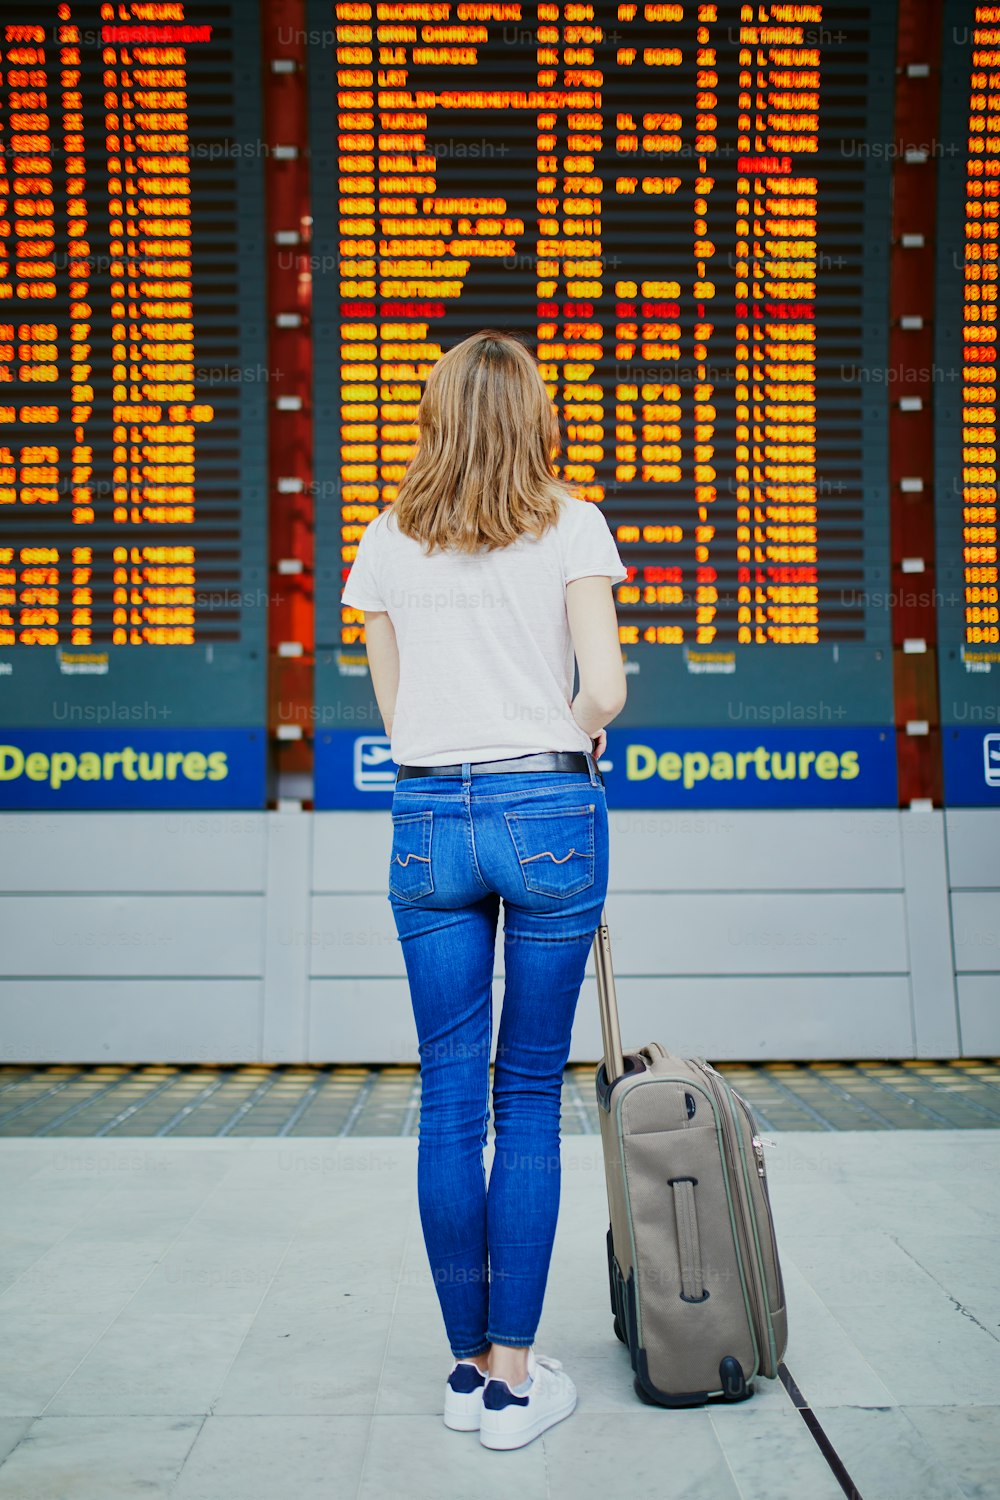 Mulher nova no aeroporto internacional com bagagem perto da exibição da informação do voo